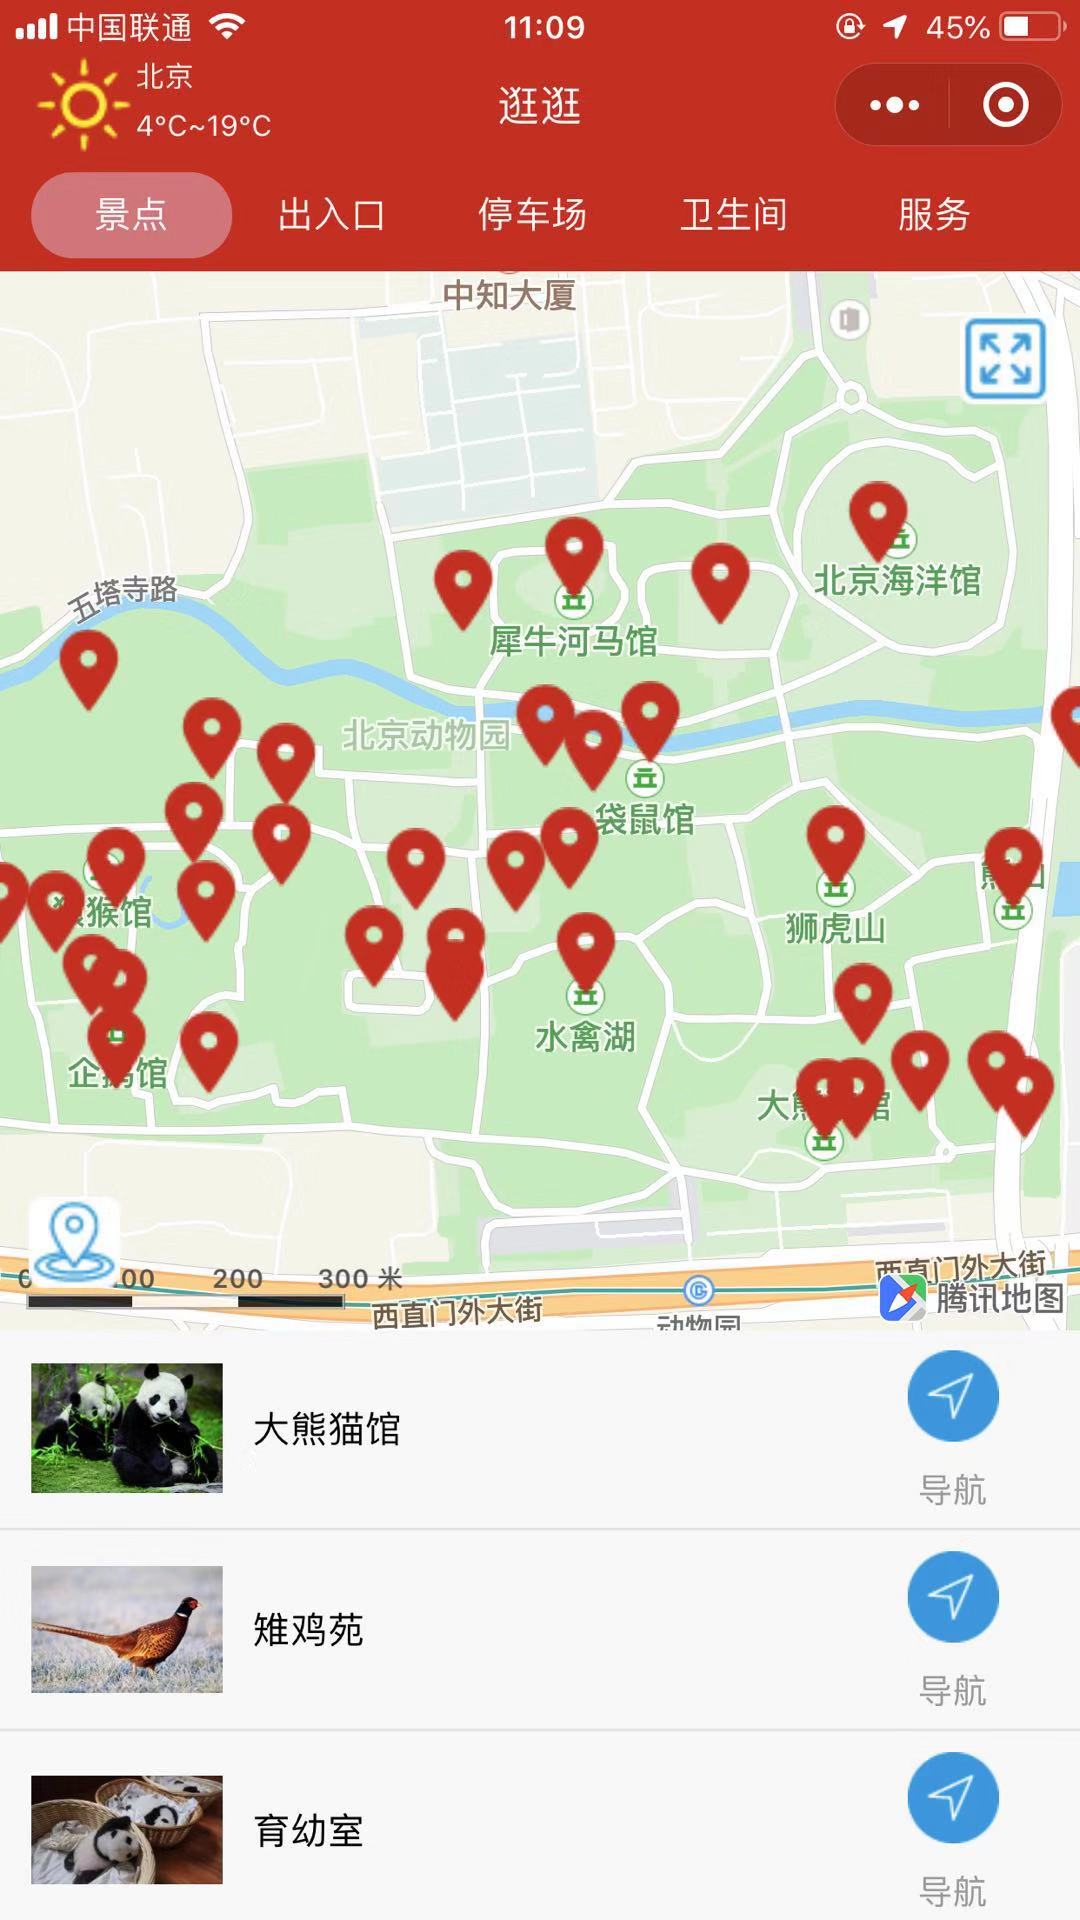 北京动物园导览_北京动物园导览小程序_北京动物园导览微信小程序